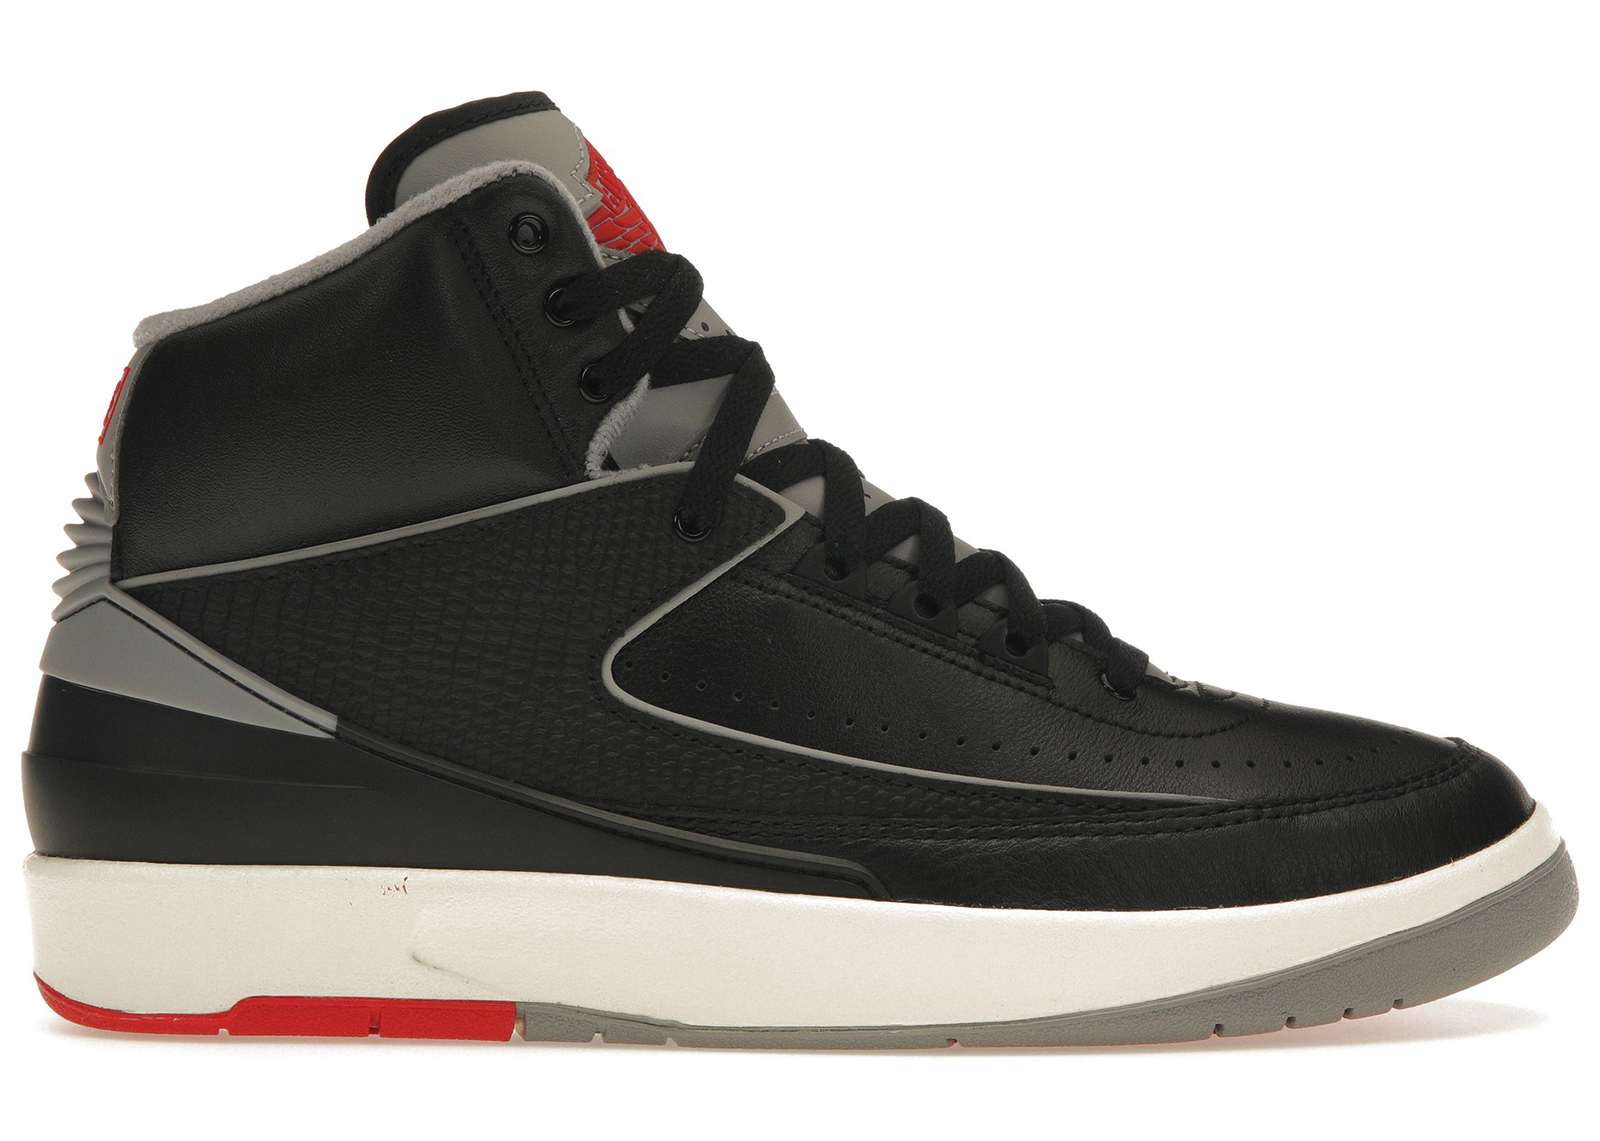 Nike Air Jordan 2 Retro Black Cementエアジョーダン2レトロ